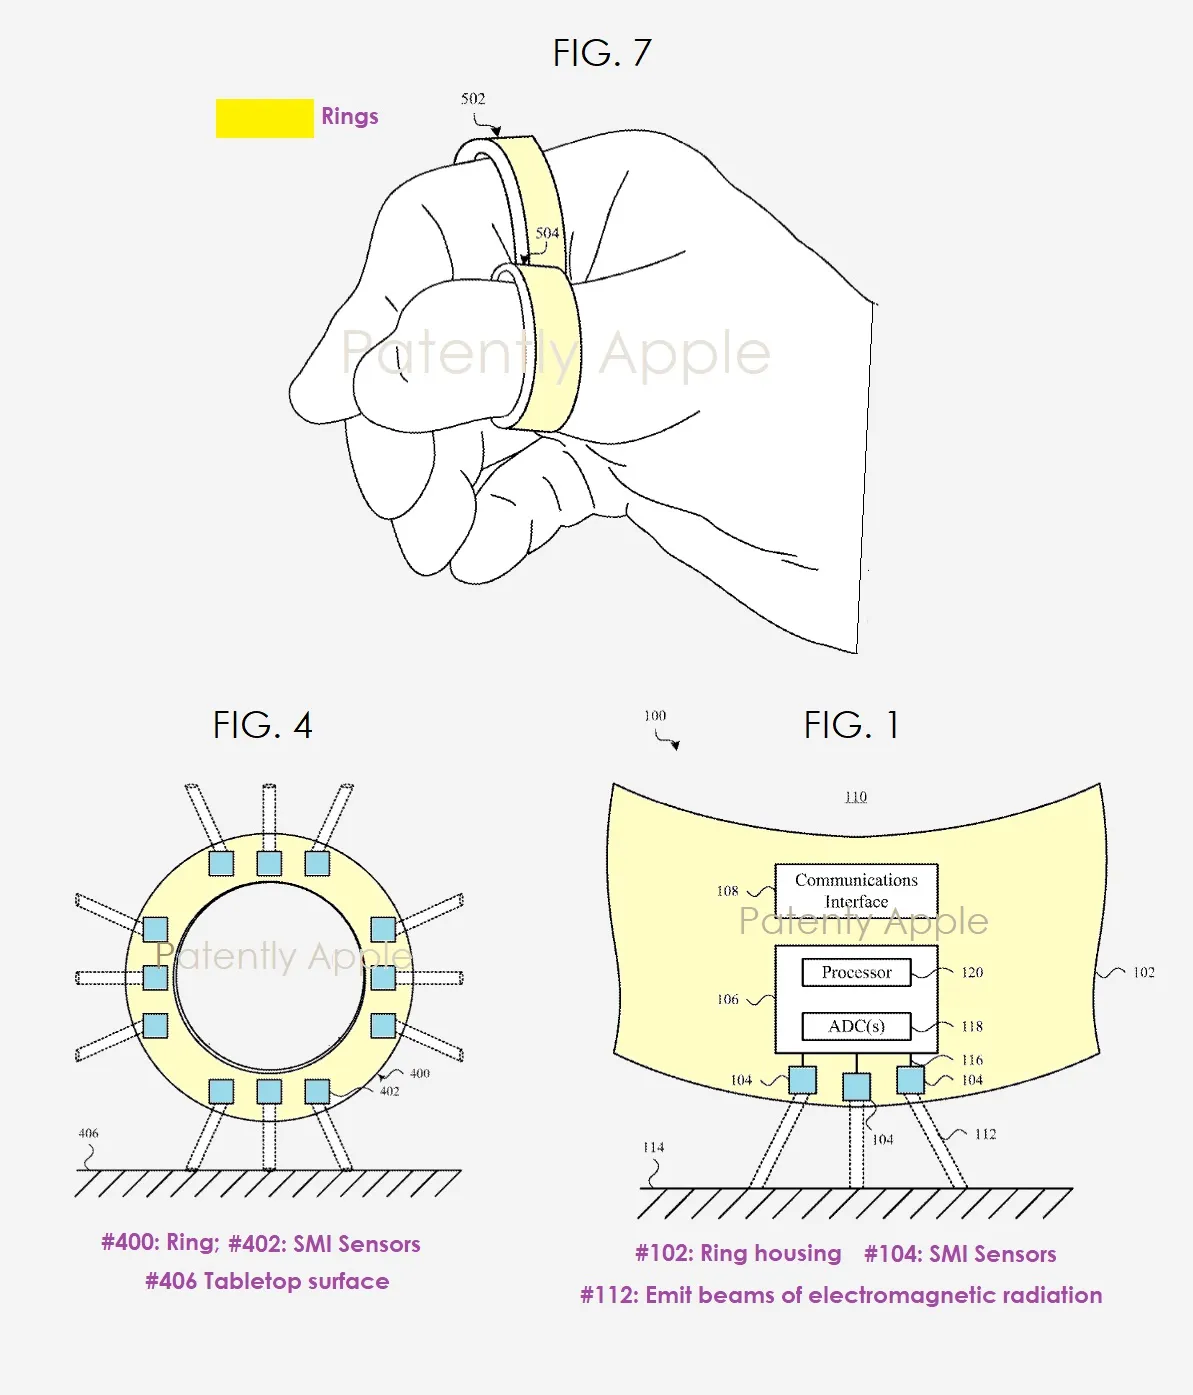 Anel inteligente da Apple utiliza sensores internos para detecção de movimentação (Imagem: Patently Apple)